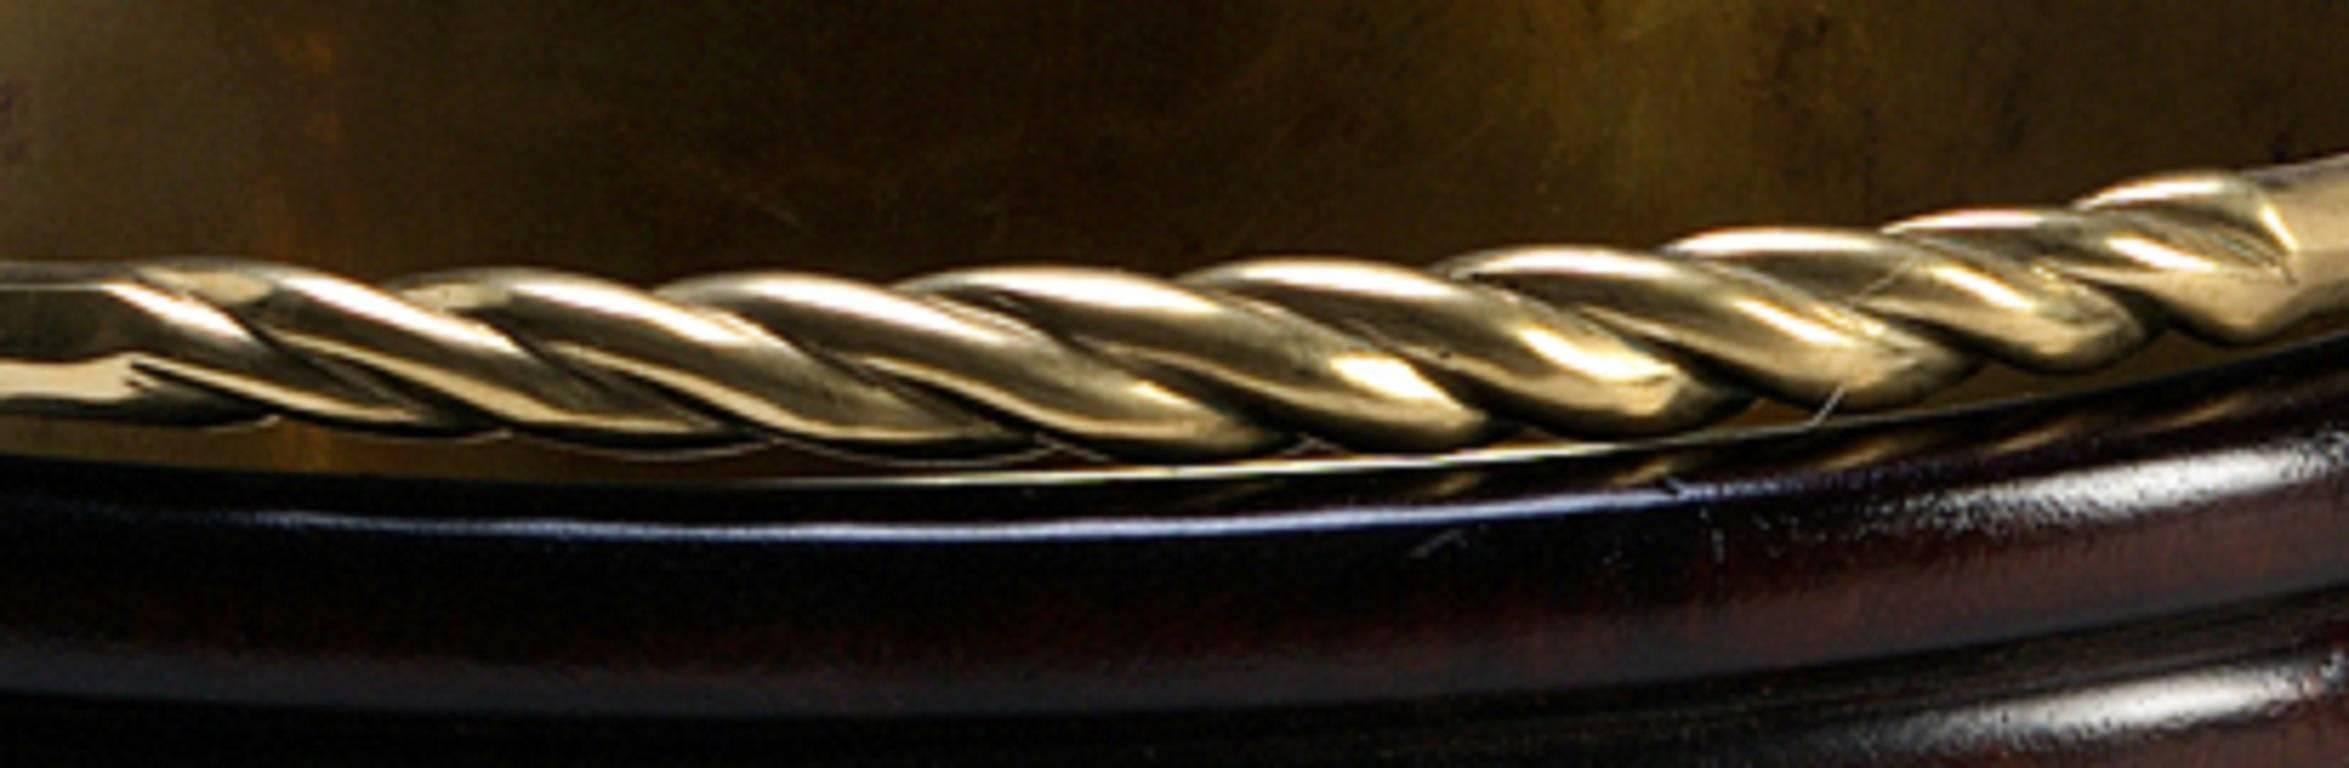 Ein Paar georgianische, messinggebundene Mahagoni-Torfeimer, spiralförmig geschnitzt mit einem eingefügten Muschelmotiv, Drehgriff mit Messingschlaufe und Messingeinlage.

Kann auch als Abfalleimer oder Eiskübel verwendet werden.

Wir arbeiten